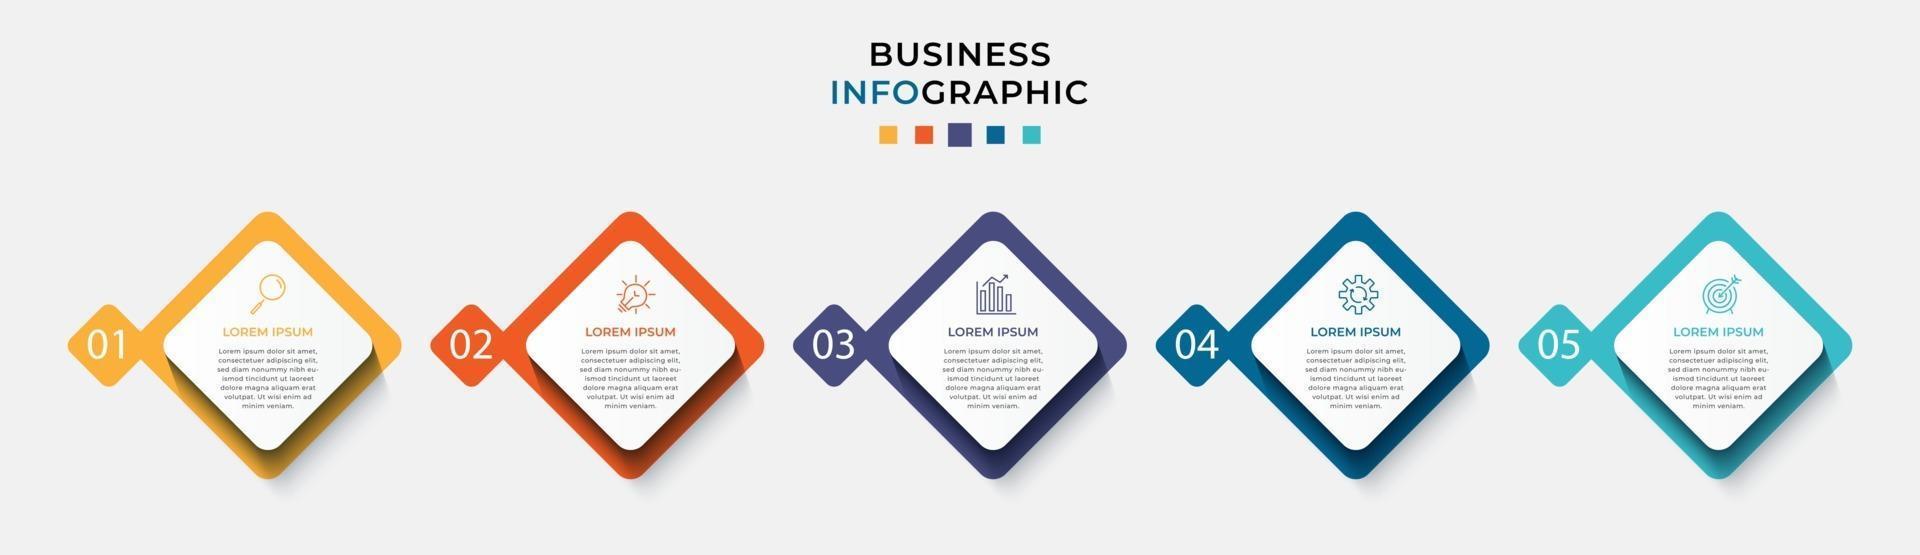 vector de plantilla de diseño de infografía empresarial con iconos y 5 cinco opciones o pasos